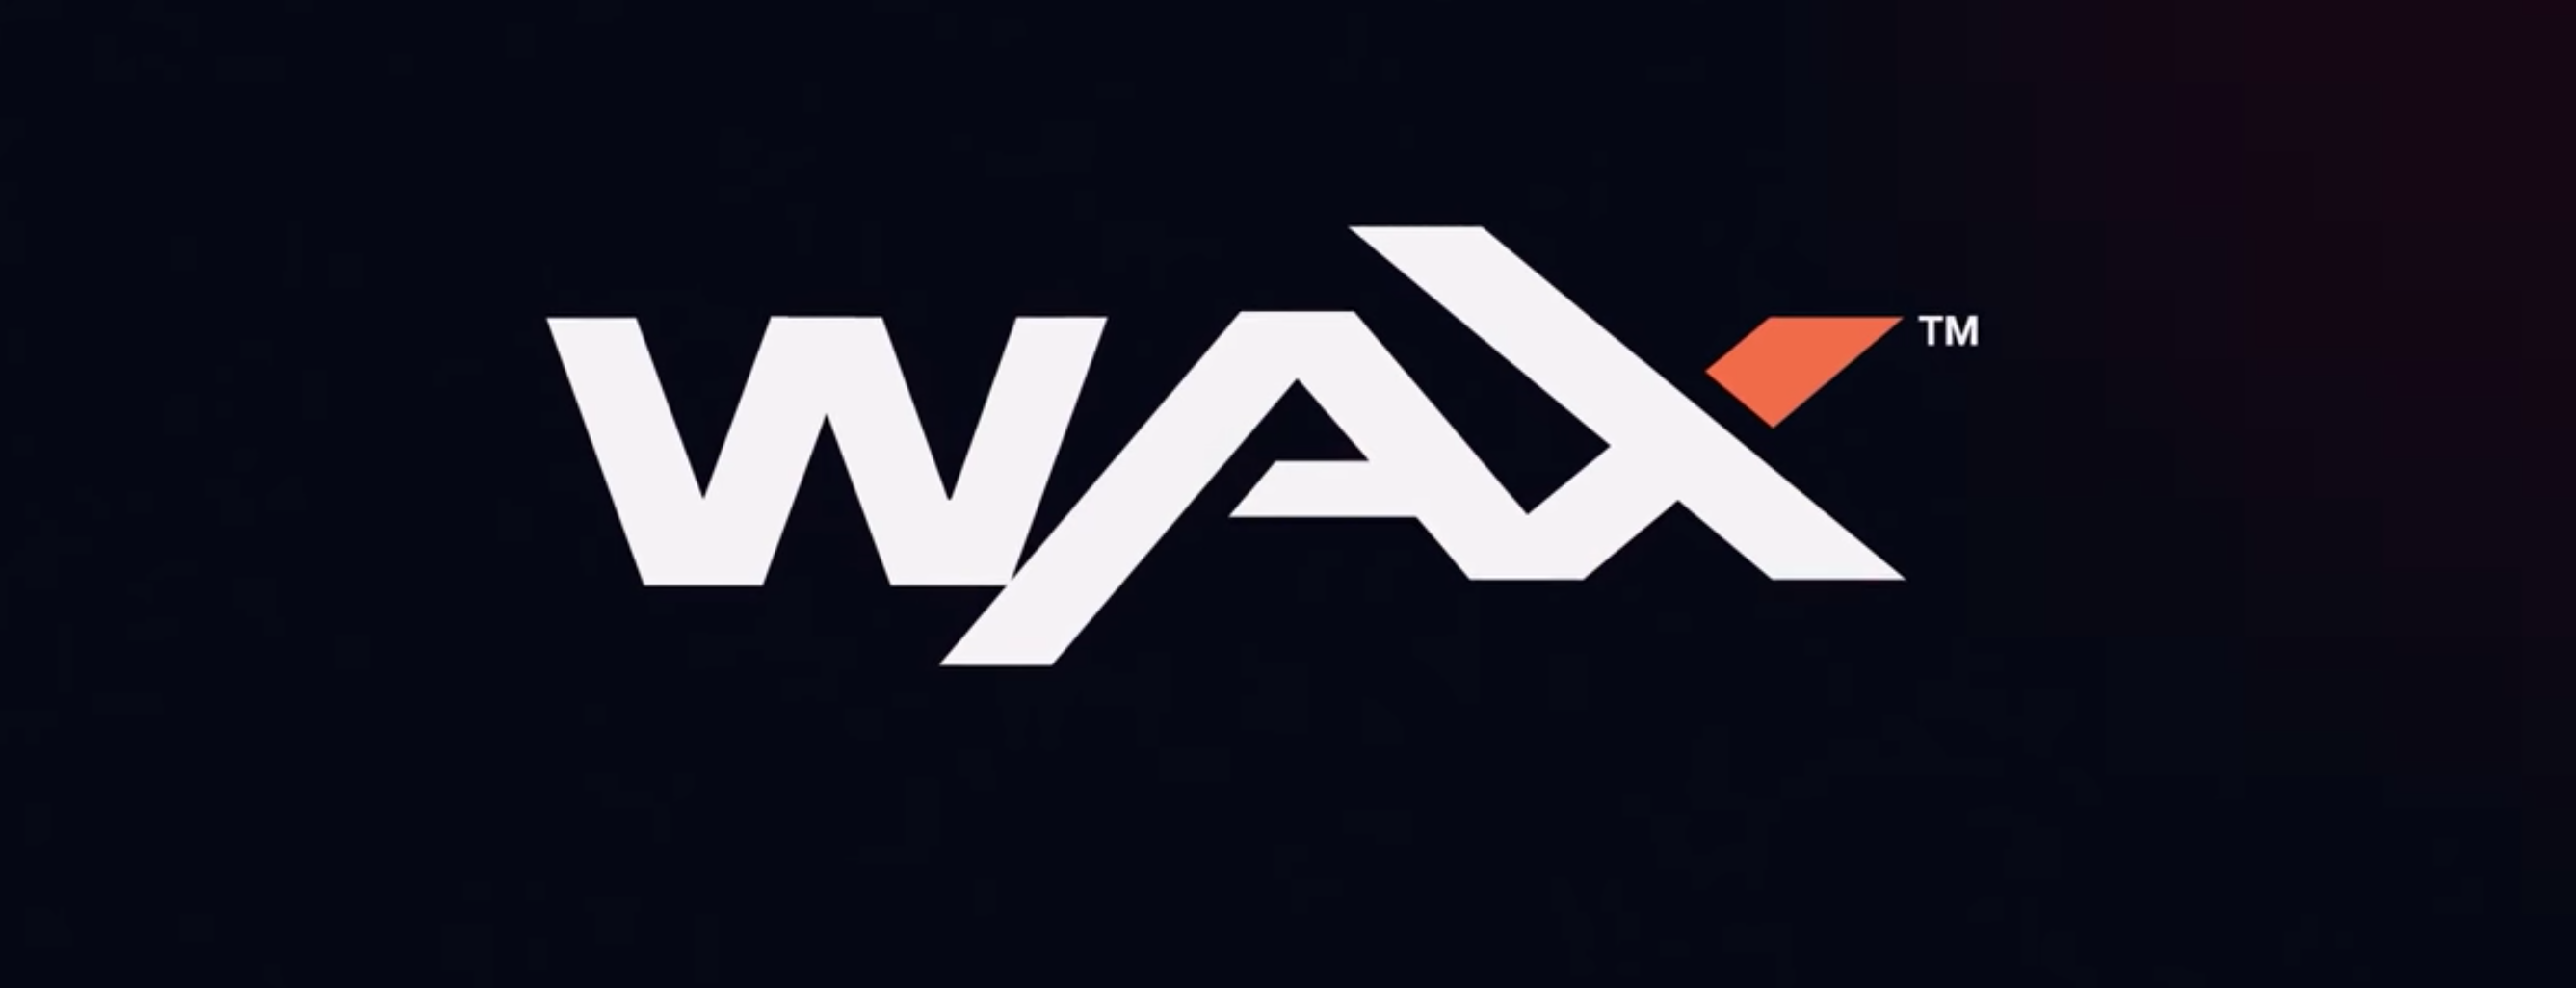 WAX logo banner.